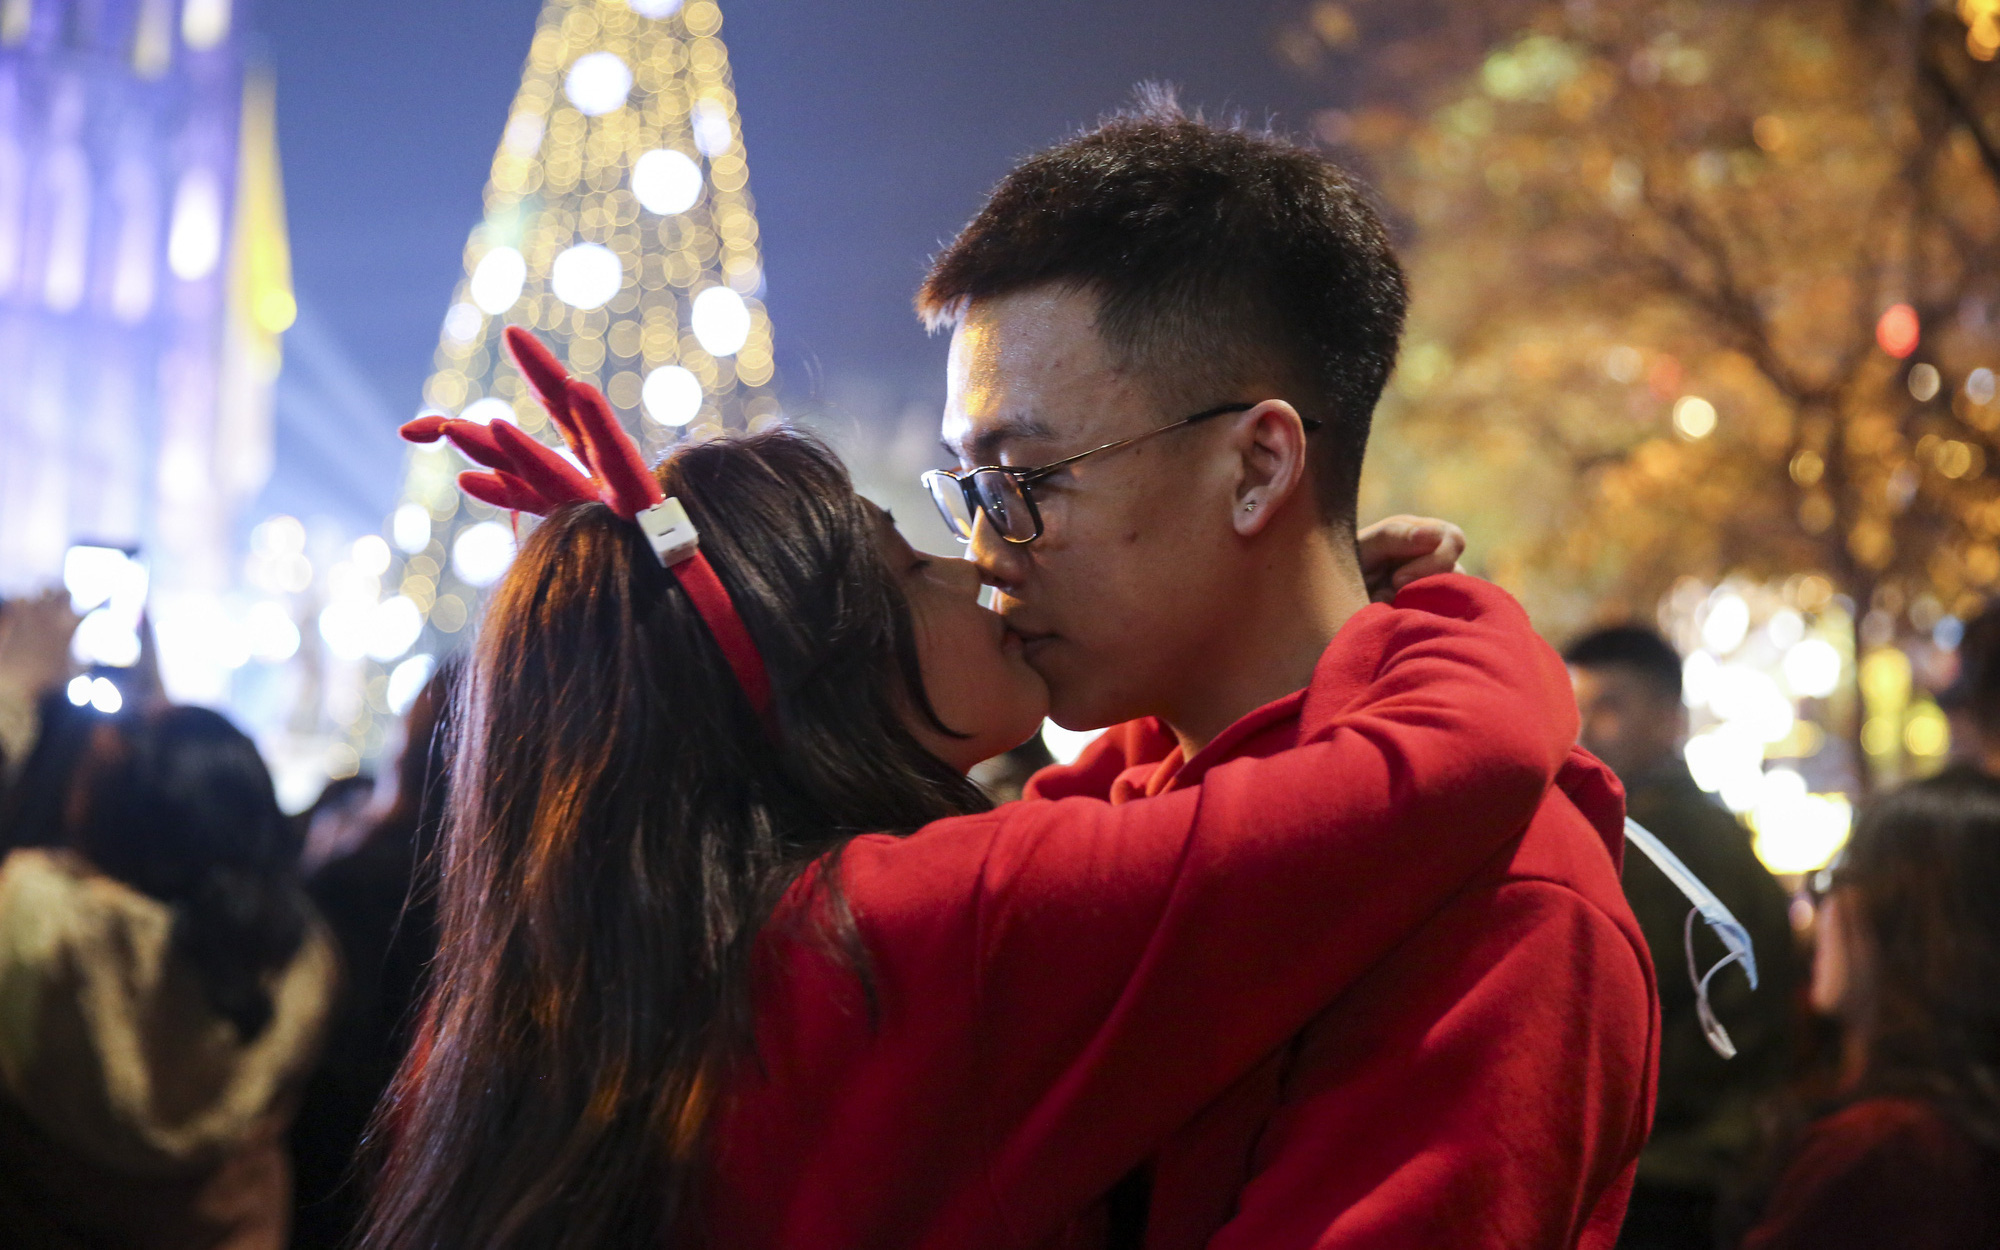 Các cặp đôi trao nhau những nụ hôn nồng cháy thời khắc Chúa ra đời trong đêm Giáng sinh